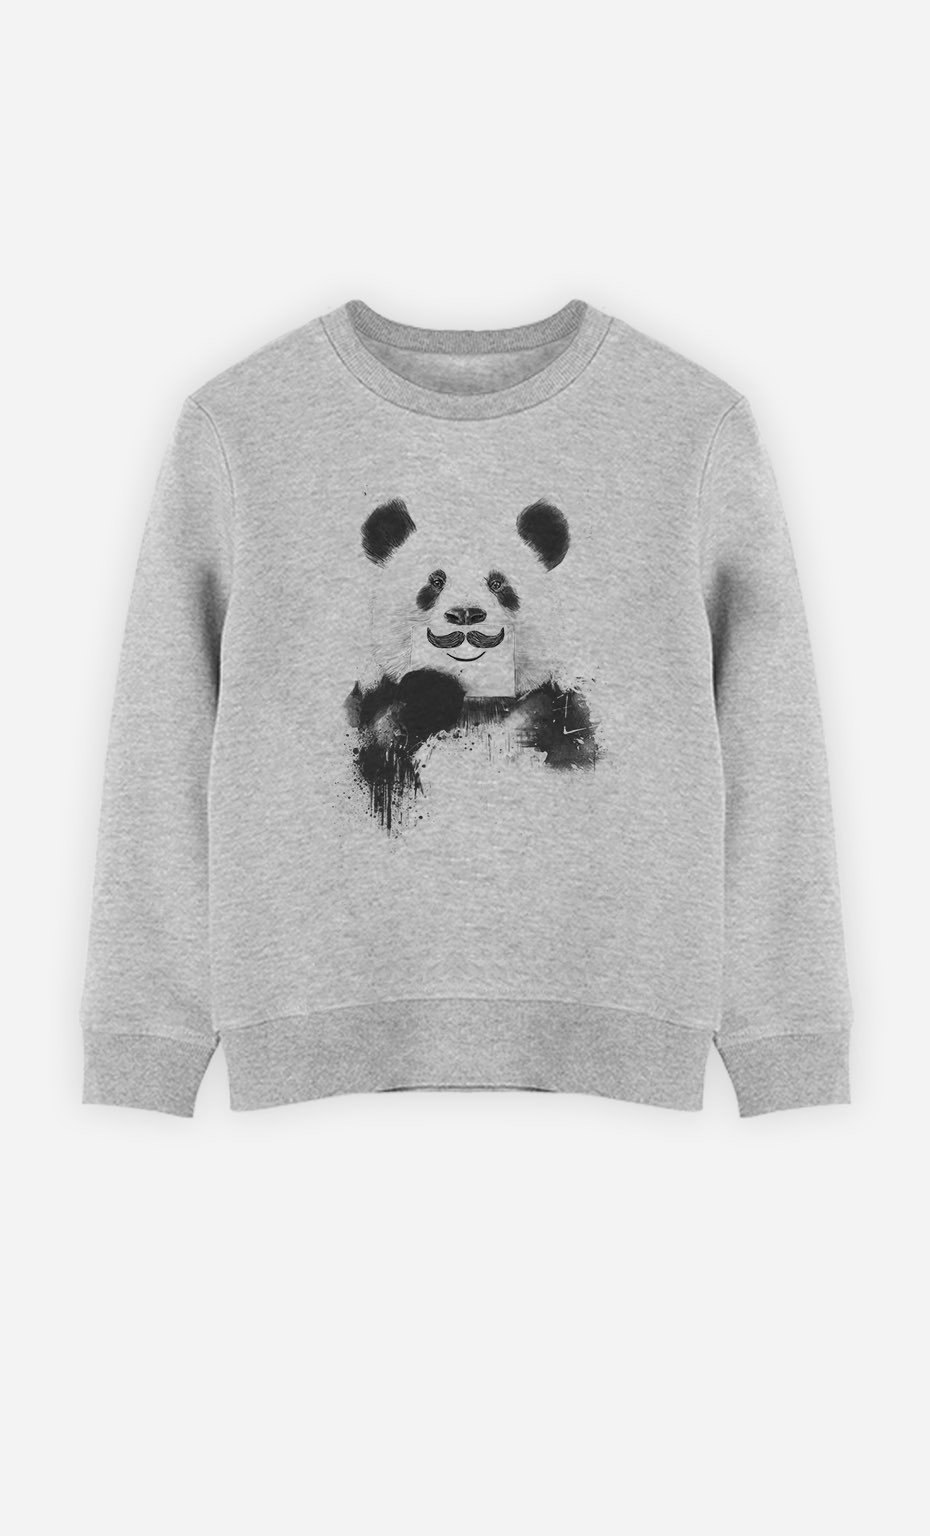 Sweatshirt Funny Panda